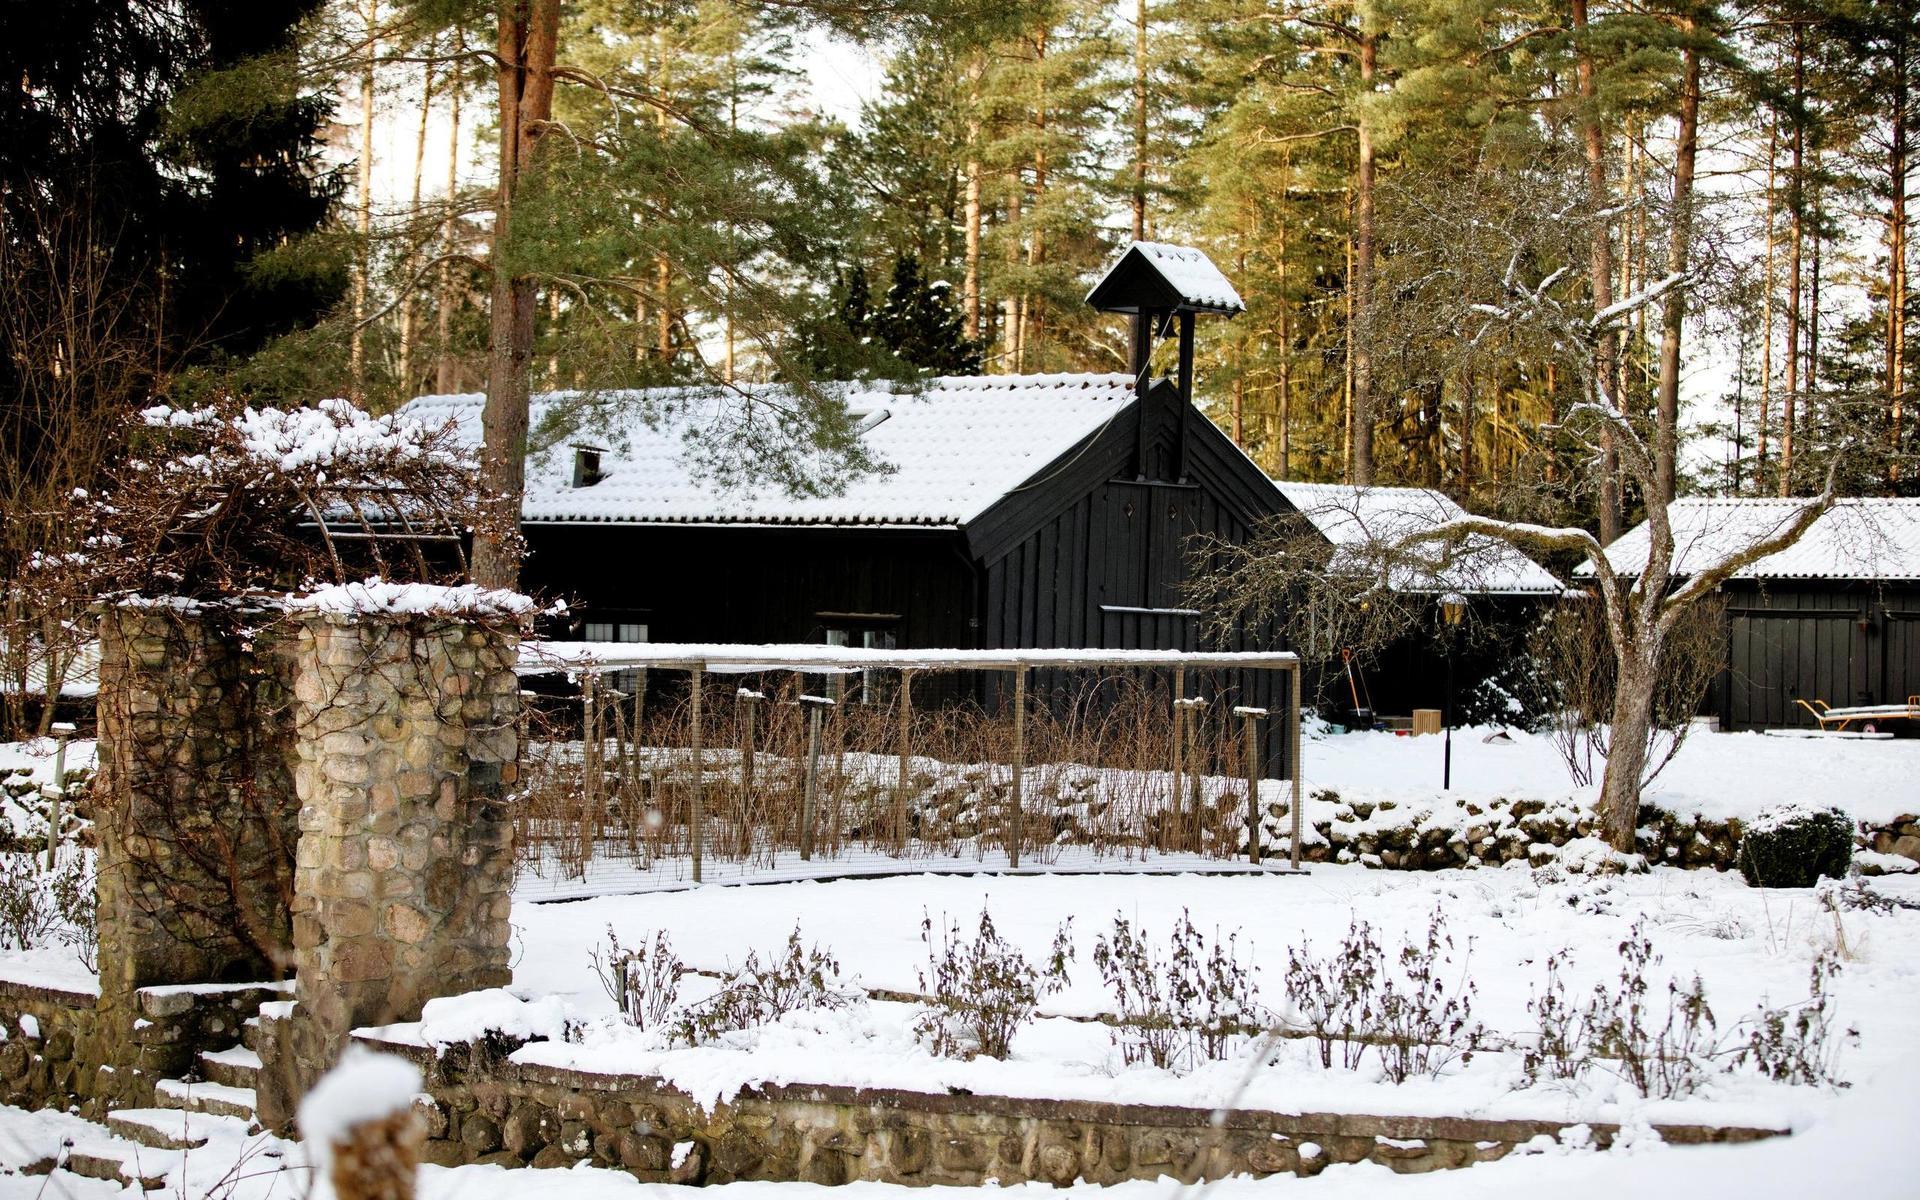 Här syns bostadshusen på Vargaslätten. Göran bor i Lill-stugan (närmast i bild), byggd 1917, men då som stall. Gerben och hans fru bor i Annexet (till höger i bilden), som byggdes 1956 då den befintliga ladugården revs.